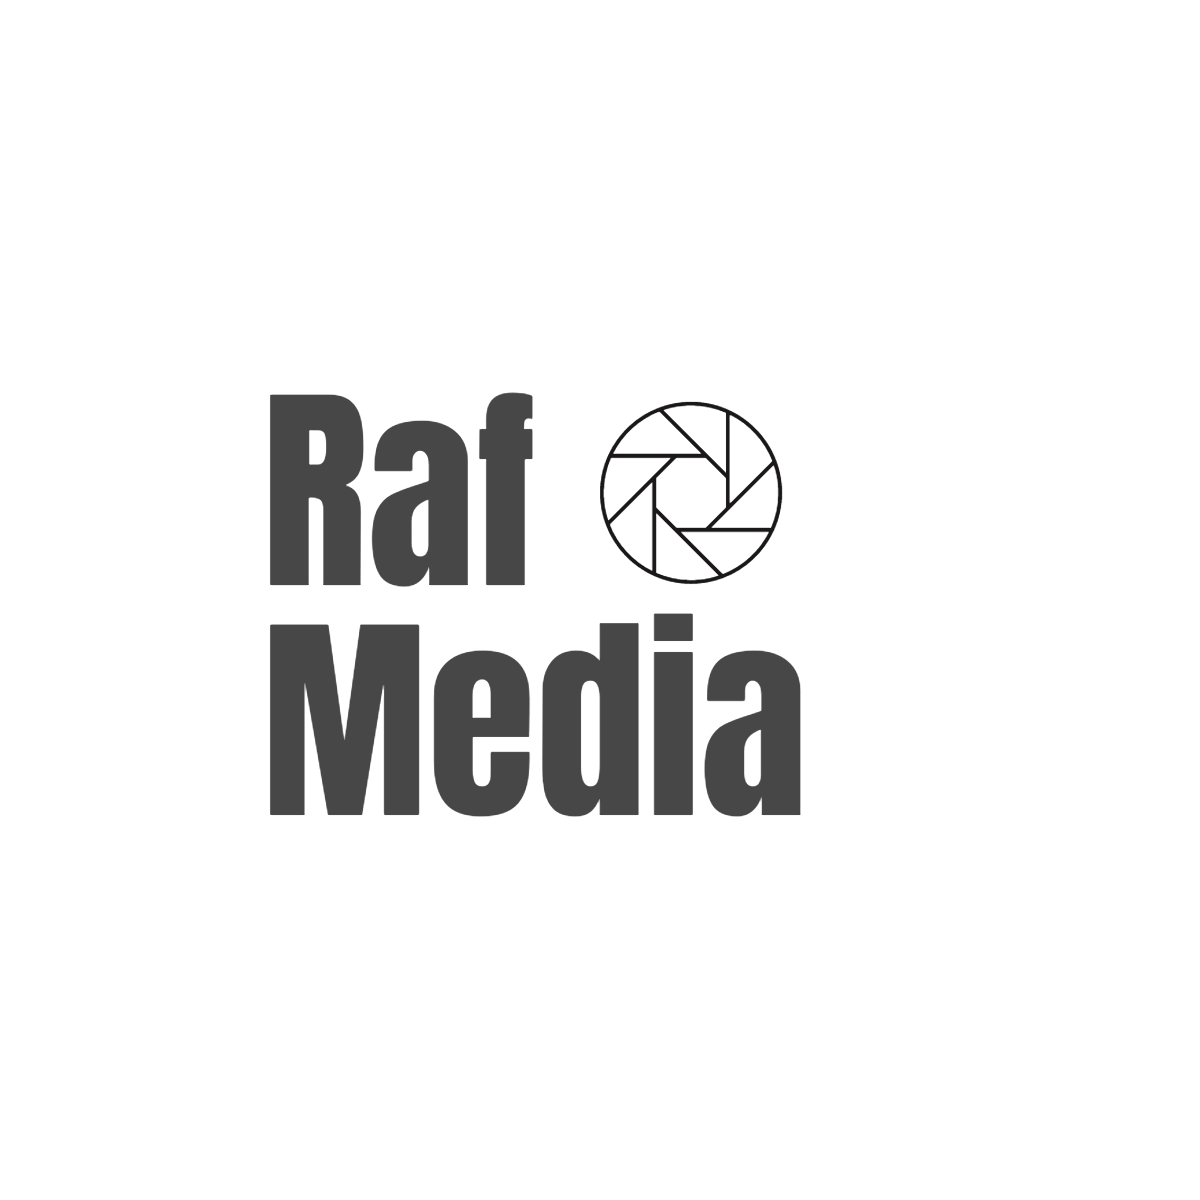 Raf Media